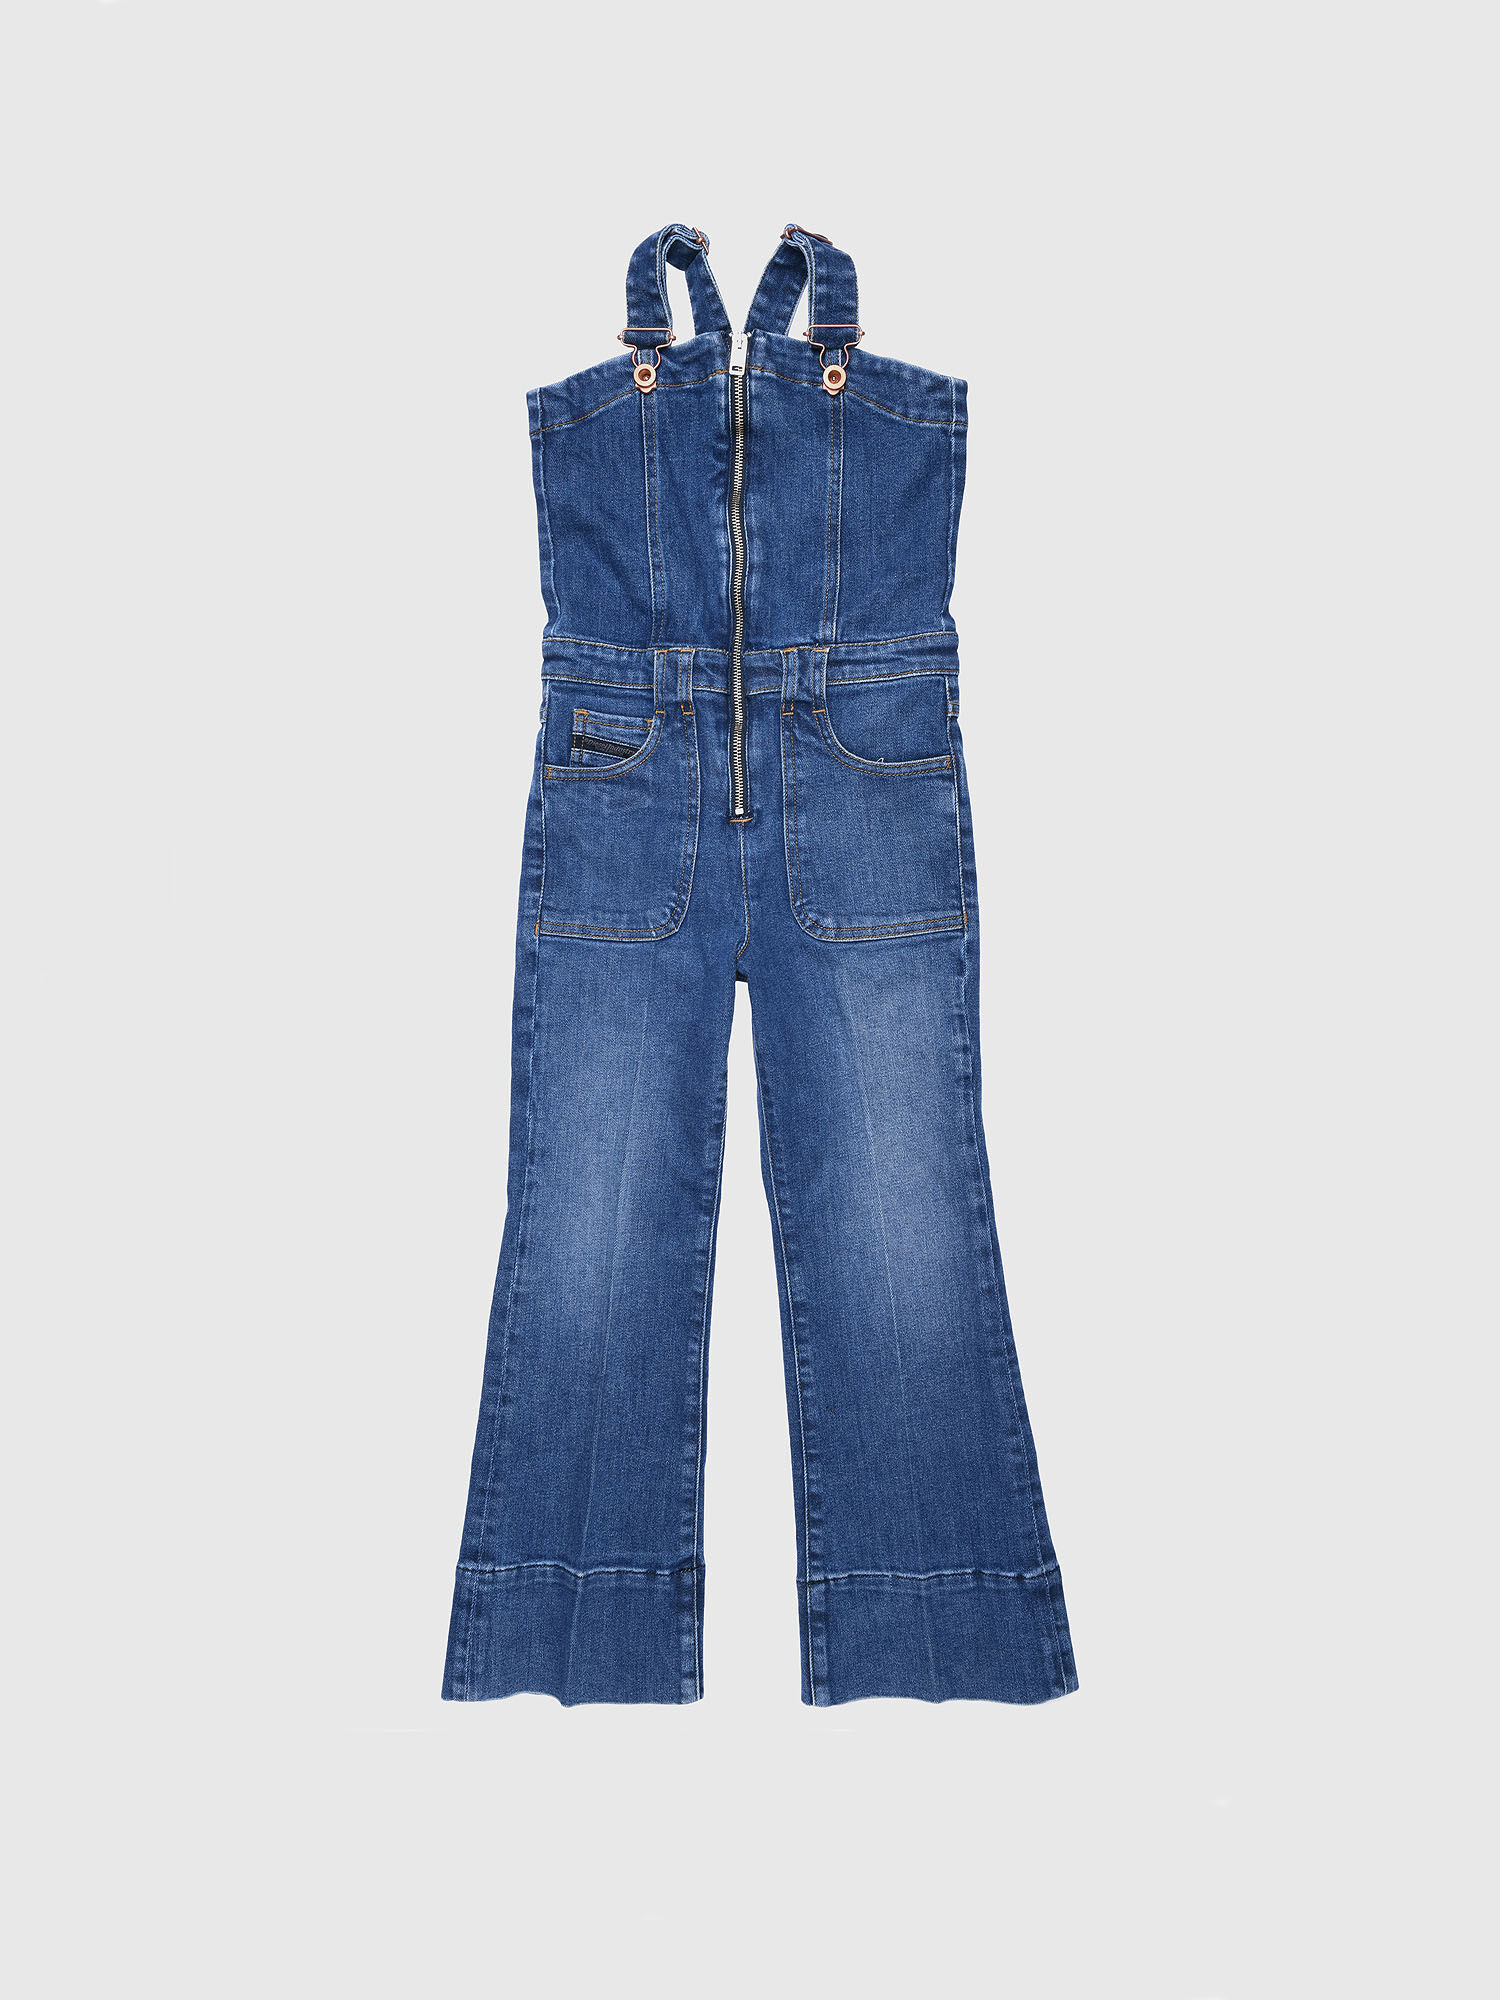 Diesel - JETHINK, Blue Jeans - Image 1